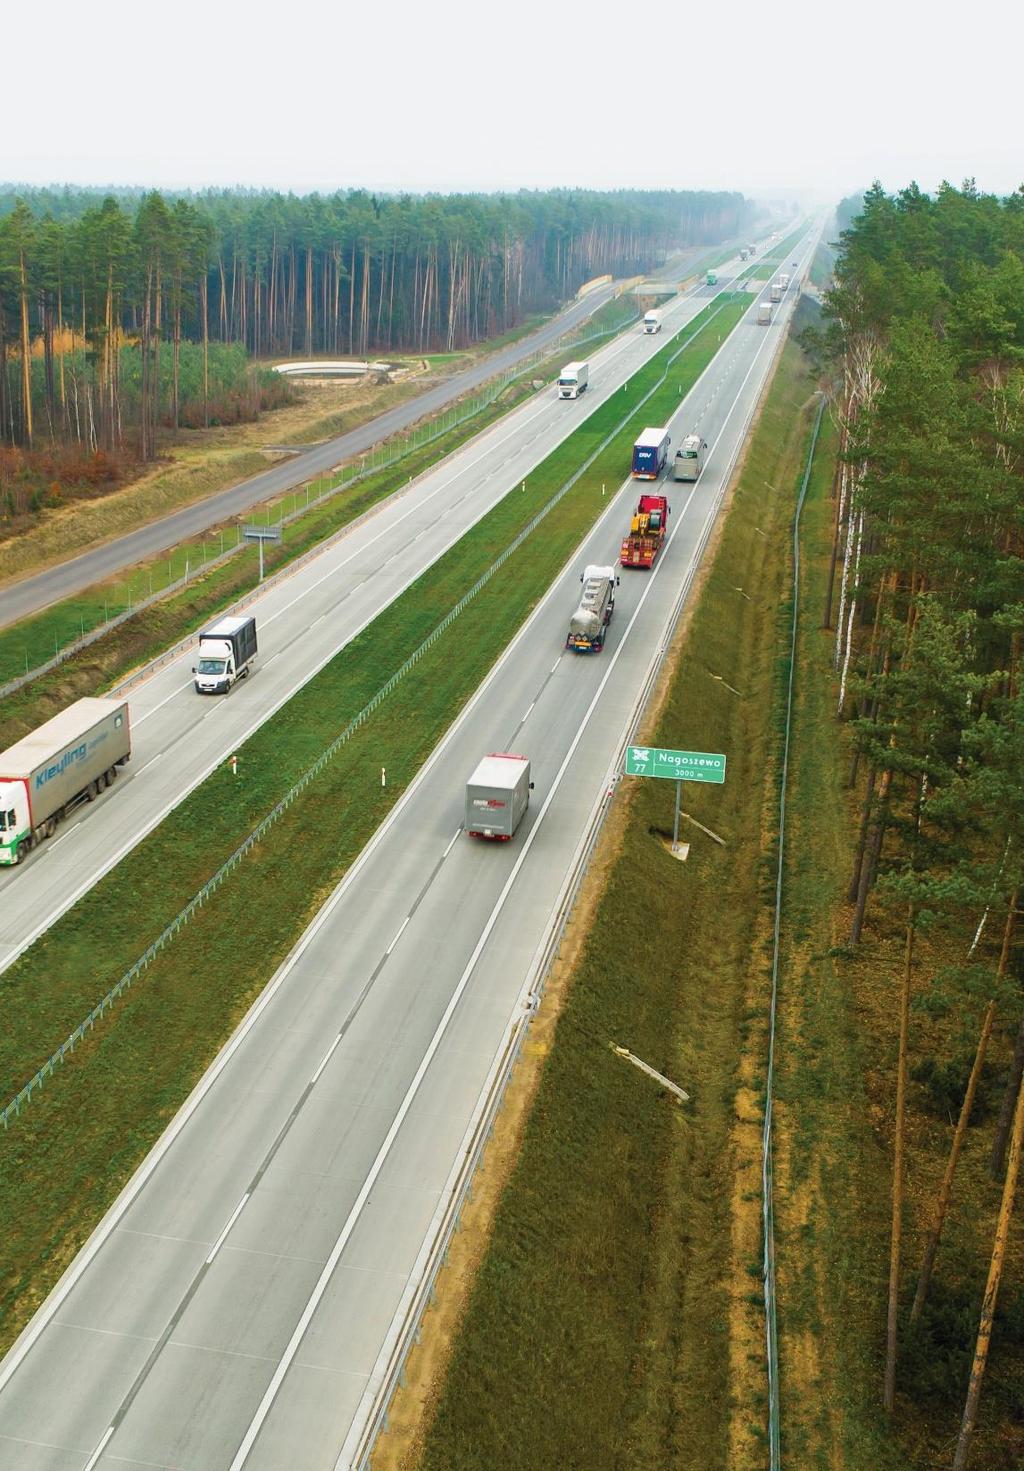 31 Działalność drogowo-mostowa Oddział Infrastruktury Unibep SA oraz Budrex-Kobi Sp. z o.o. z powodzeniem realizują drogi oraz budują obiekty inżynieryjne głównie na terenie Polski północno-wschodniej.